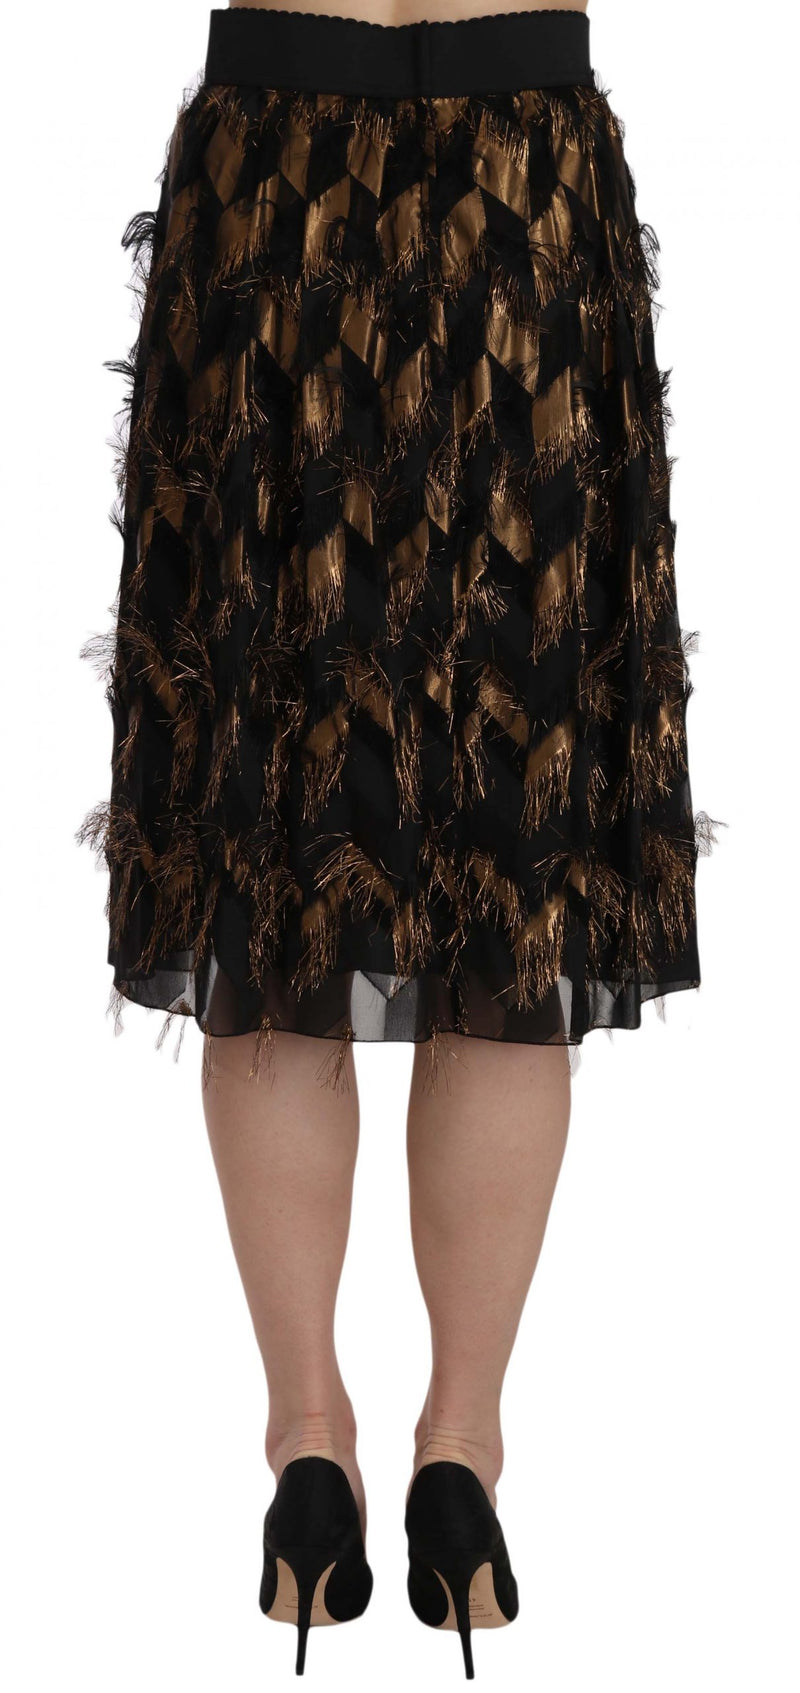 Dolce & Gabbana Elegant Gold Black Silk Blend High Waist Women's Skirt